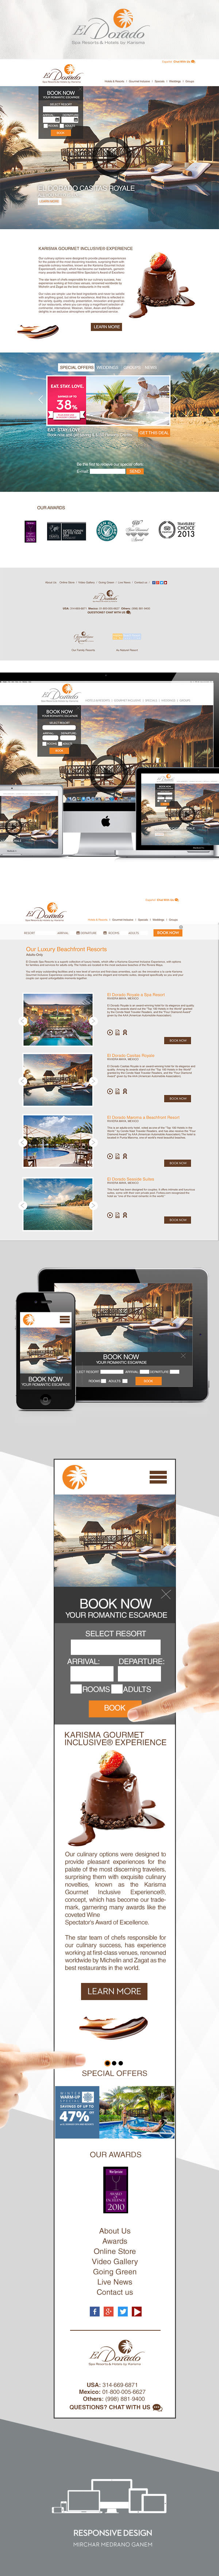 Sitio web El Dorado Spa Resorts & Hotels 0